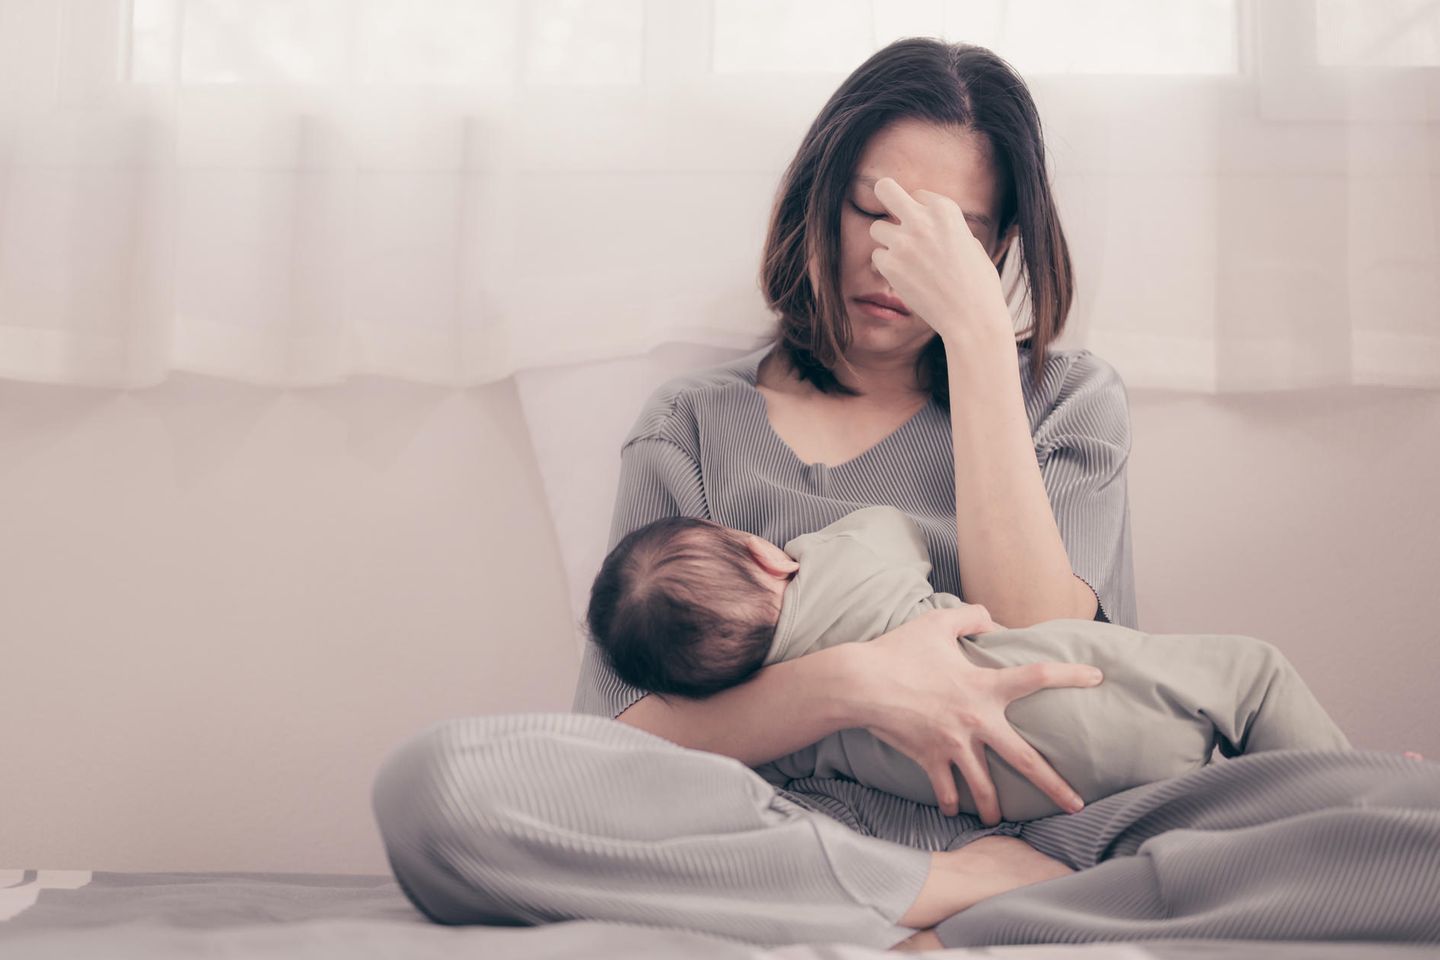 Faces of Moms: Eine erschöpfte junge Frau mit einem Säugling im Arm